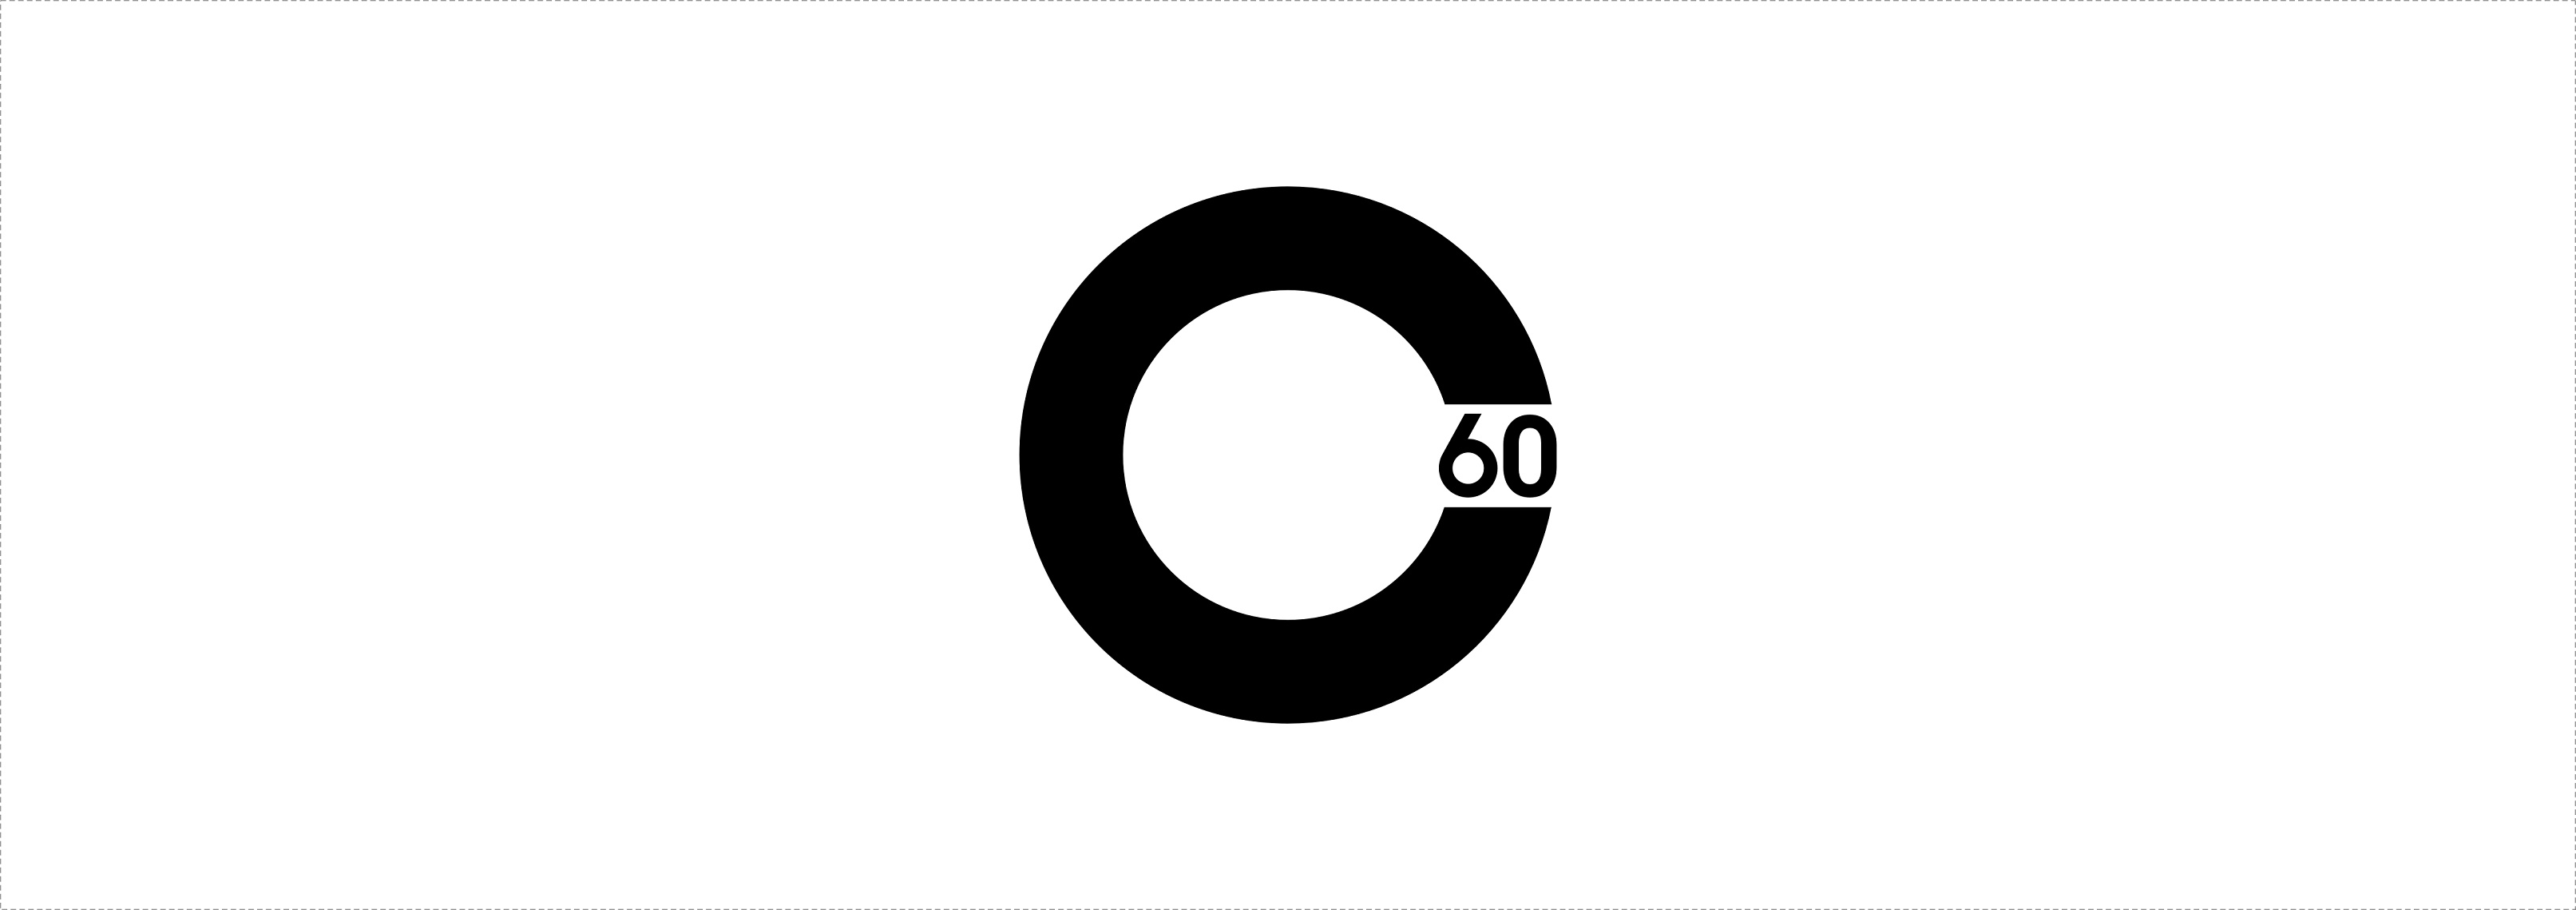 C60